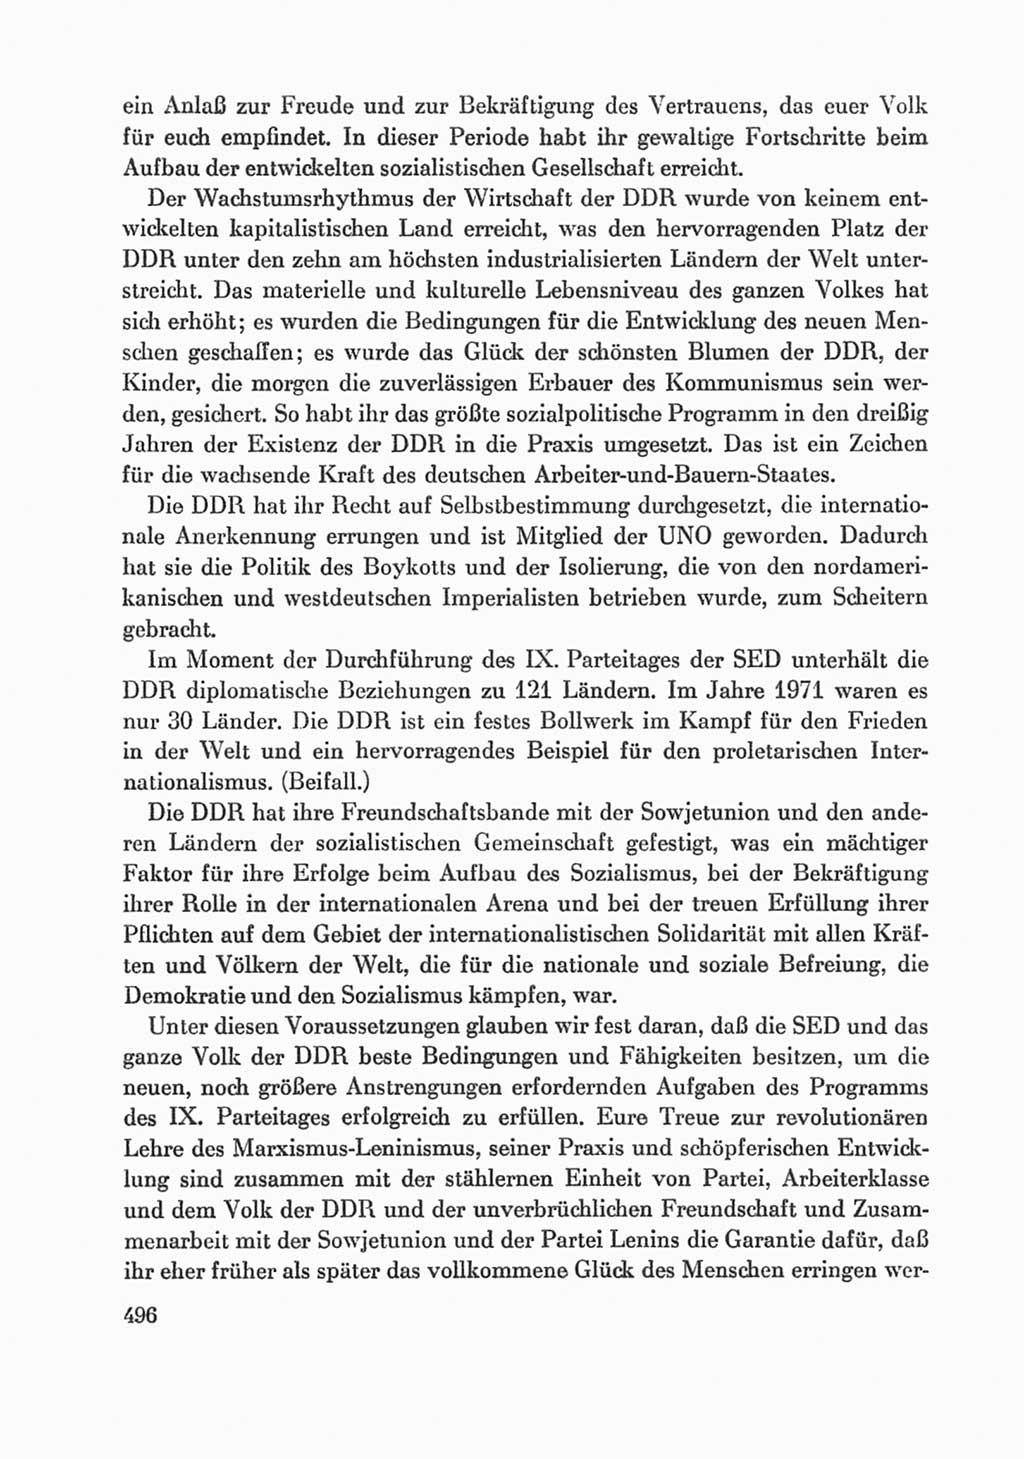 Protokoll der Verhandlungen des Ⅸ. Parteitages der Sozialistischen Einheitspartei Deutschlands (SED) [Deutsche Demokratische Republik (DDR)] 1976, Band 1, Seite 496 (Prot. Verh. Ⅸ. PT SED DDR 1976, Bd. 1, S. 496)